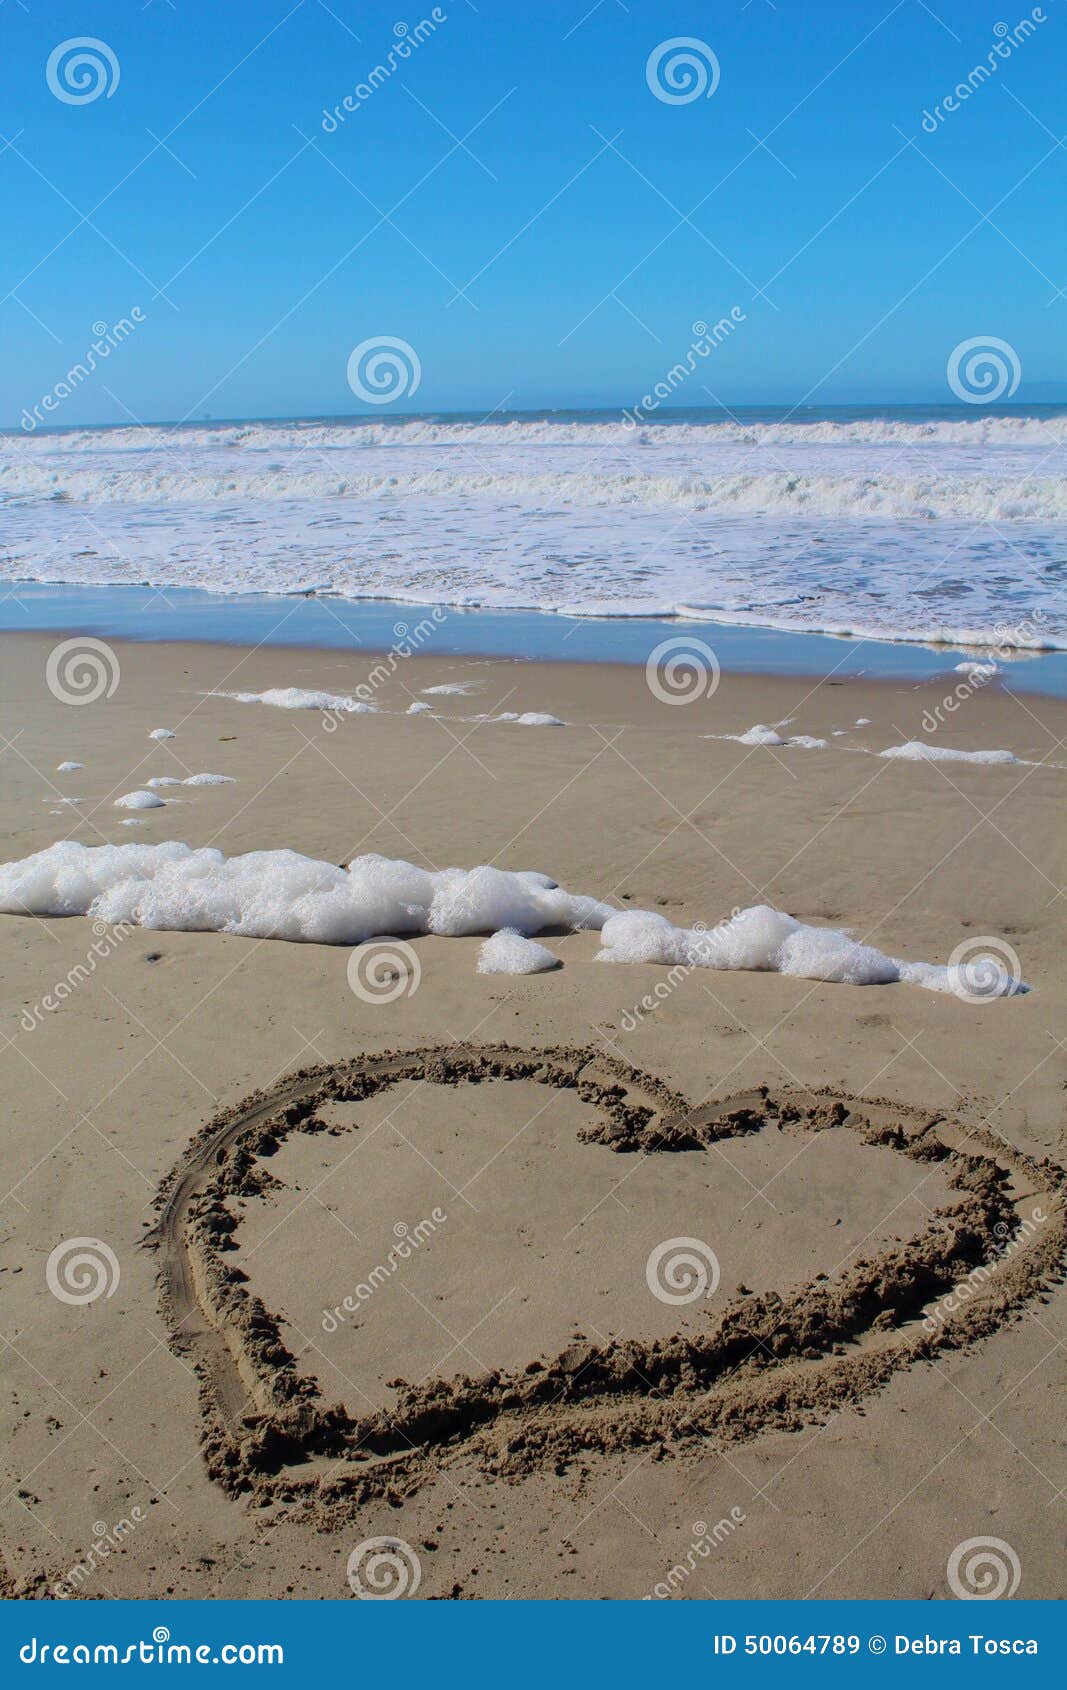 Heart Valentine beach